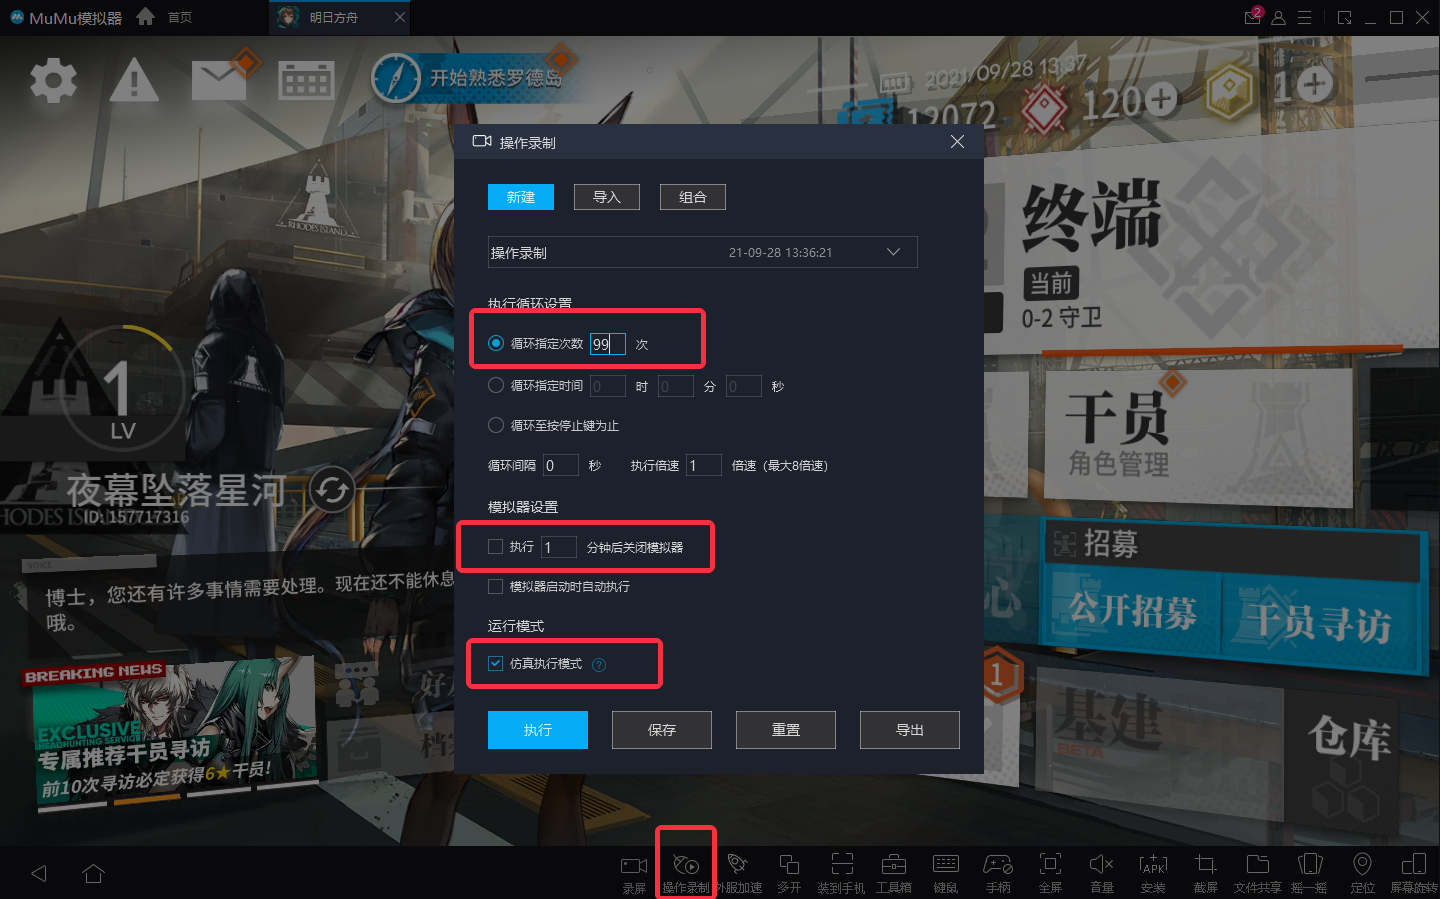 《修真江湖2》手游电脑版PC端下载安装 模拟器多开 键位设置 流畅运行教程